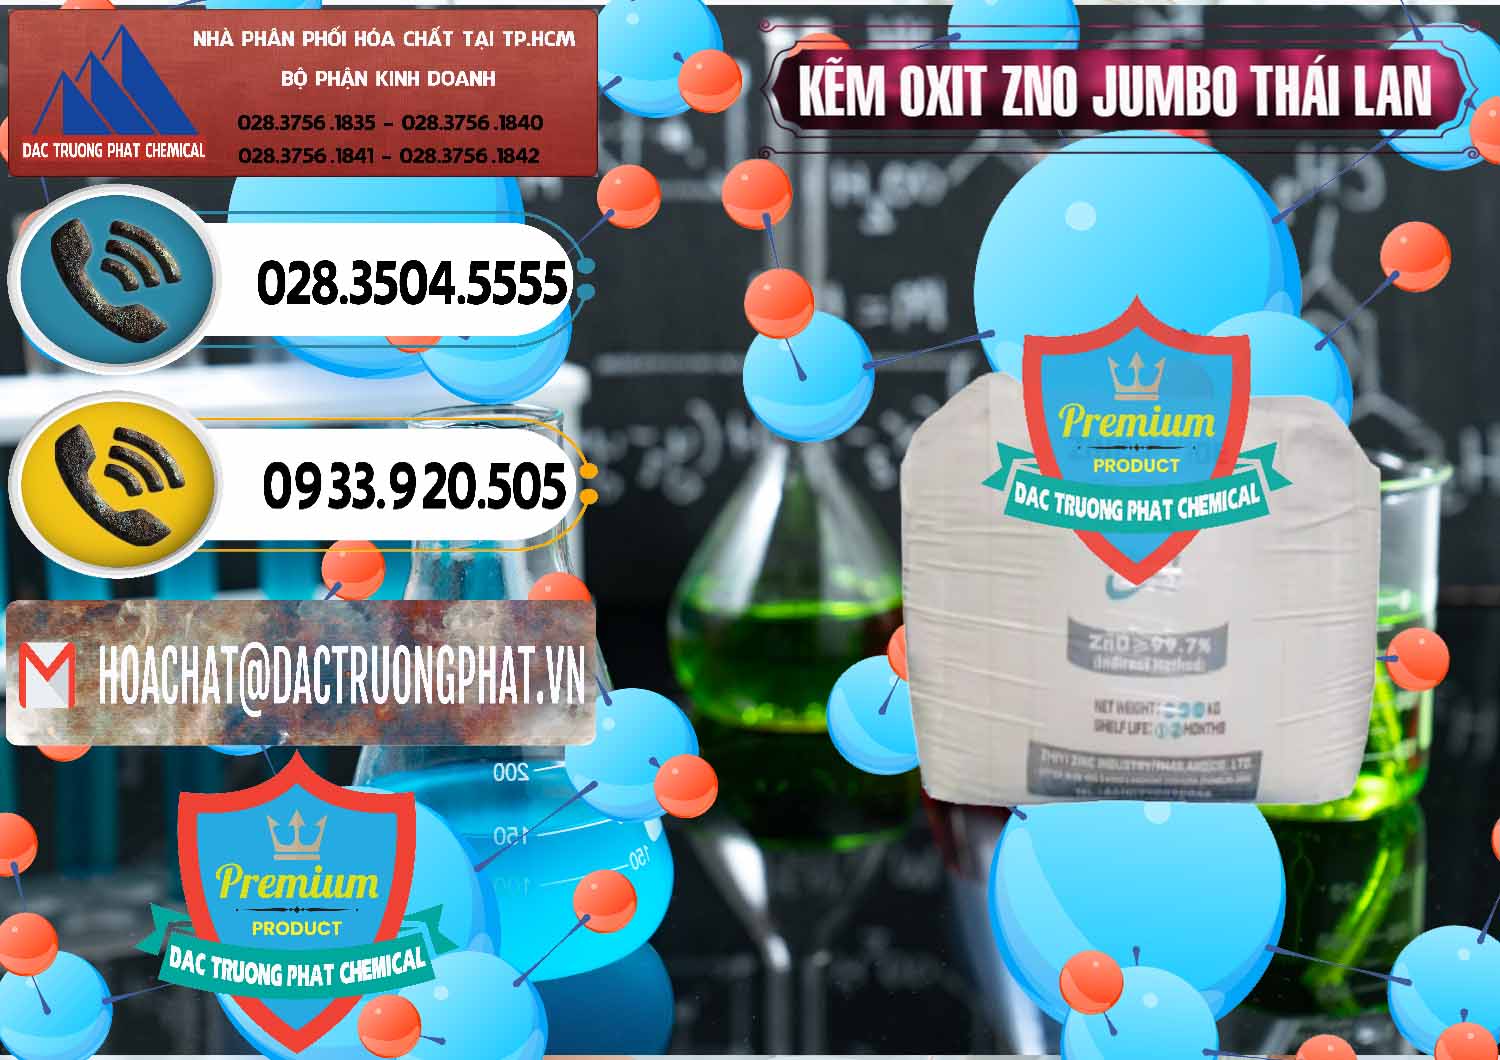 Đơn vị chuyên bán & cung cấp Zinc Oxide - Bột Kẽm Oxit ZNO Jumbo Bành Thái Lan Thailand - 0370 - Chuyên nhập khẩu _ cung cấp hóa chất tại TP.HCM - hoachatdetnhuom.vn